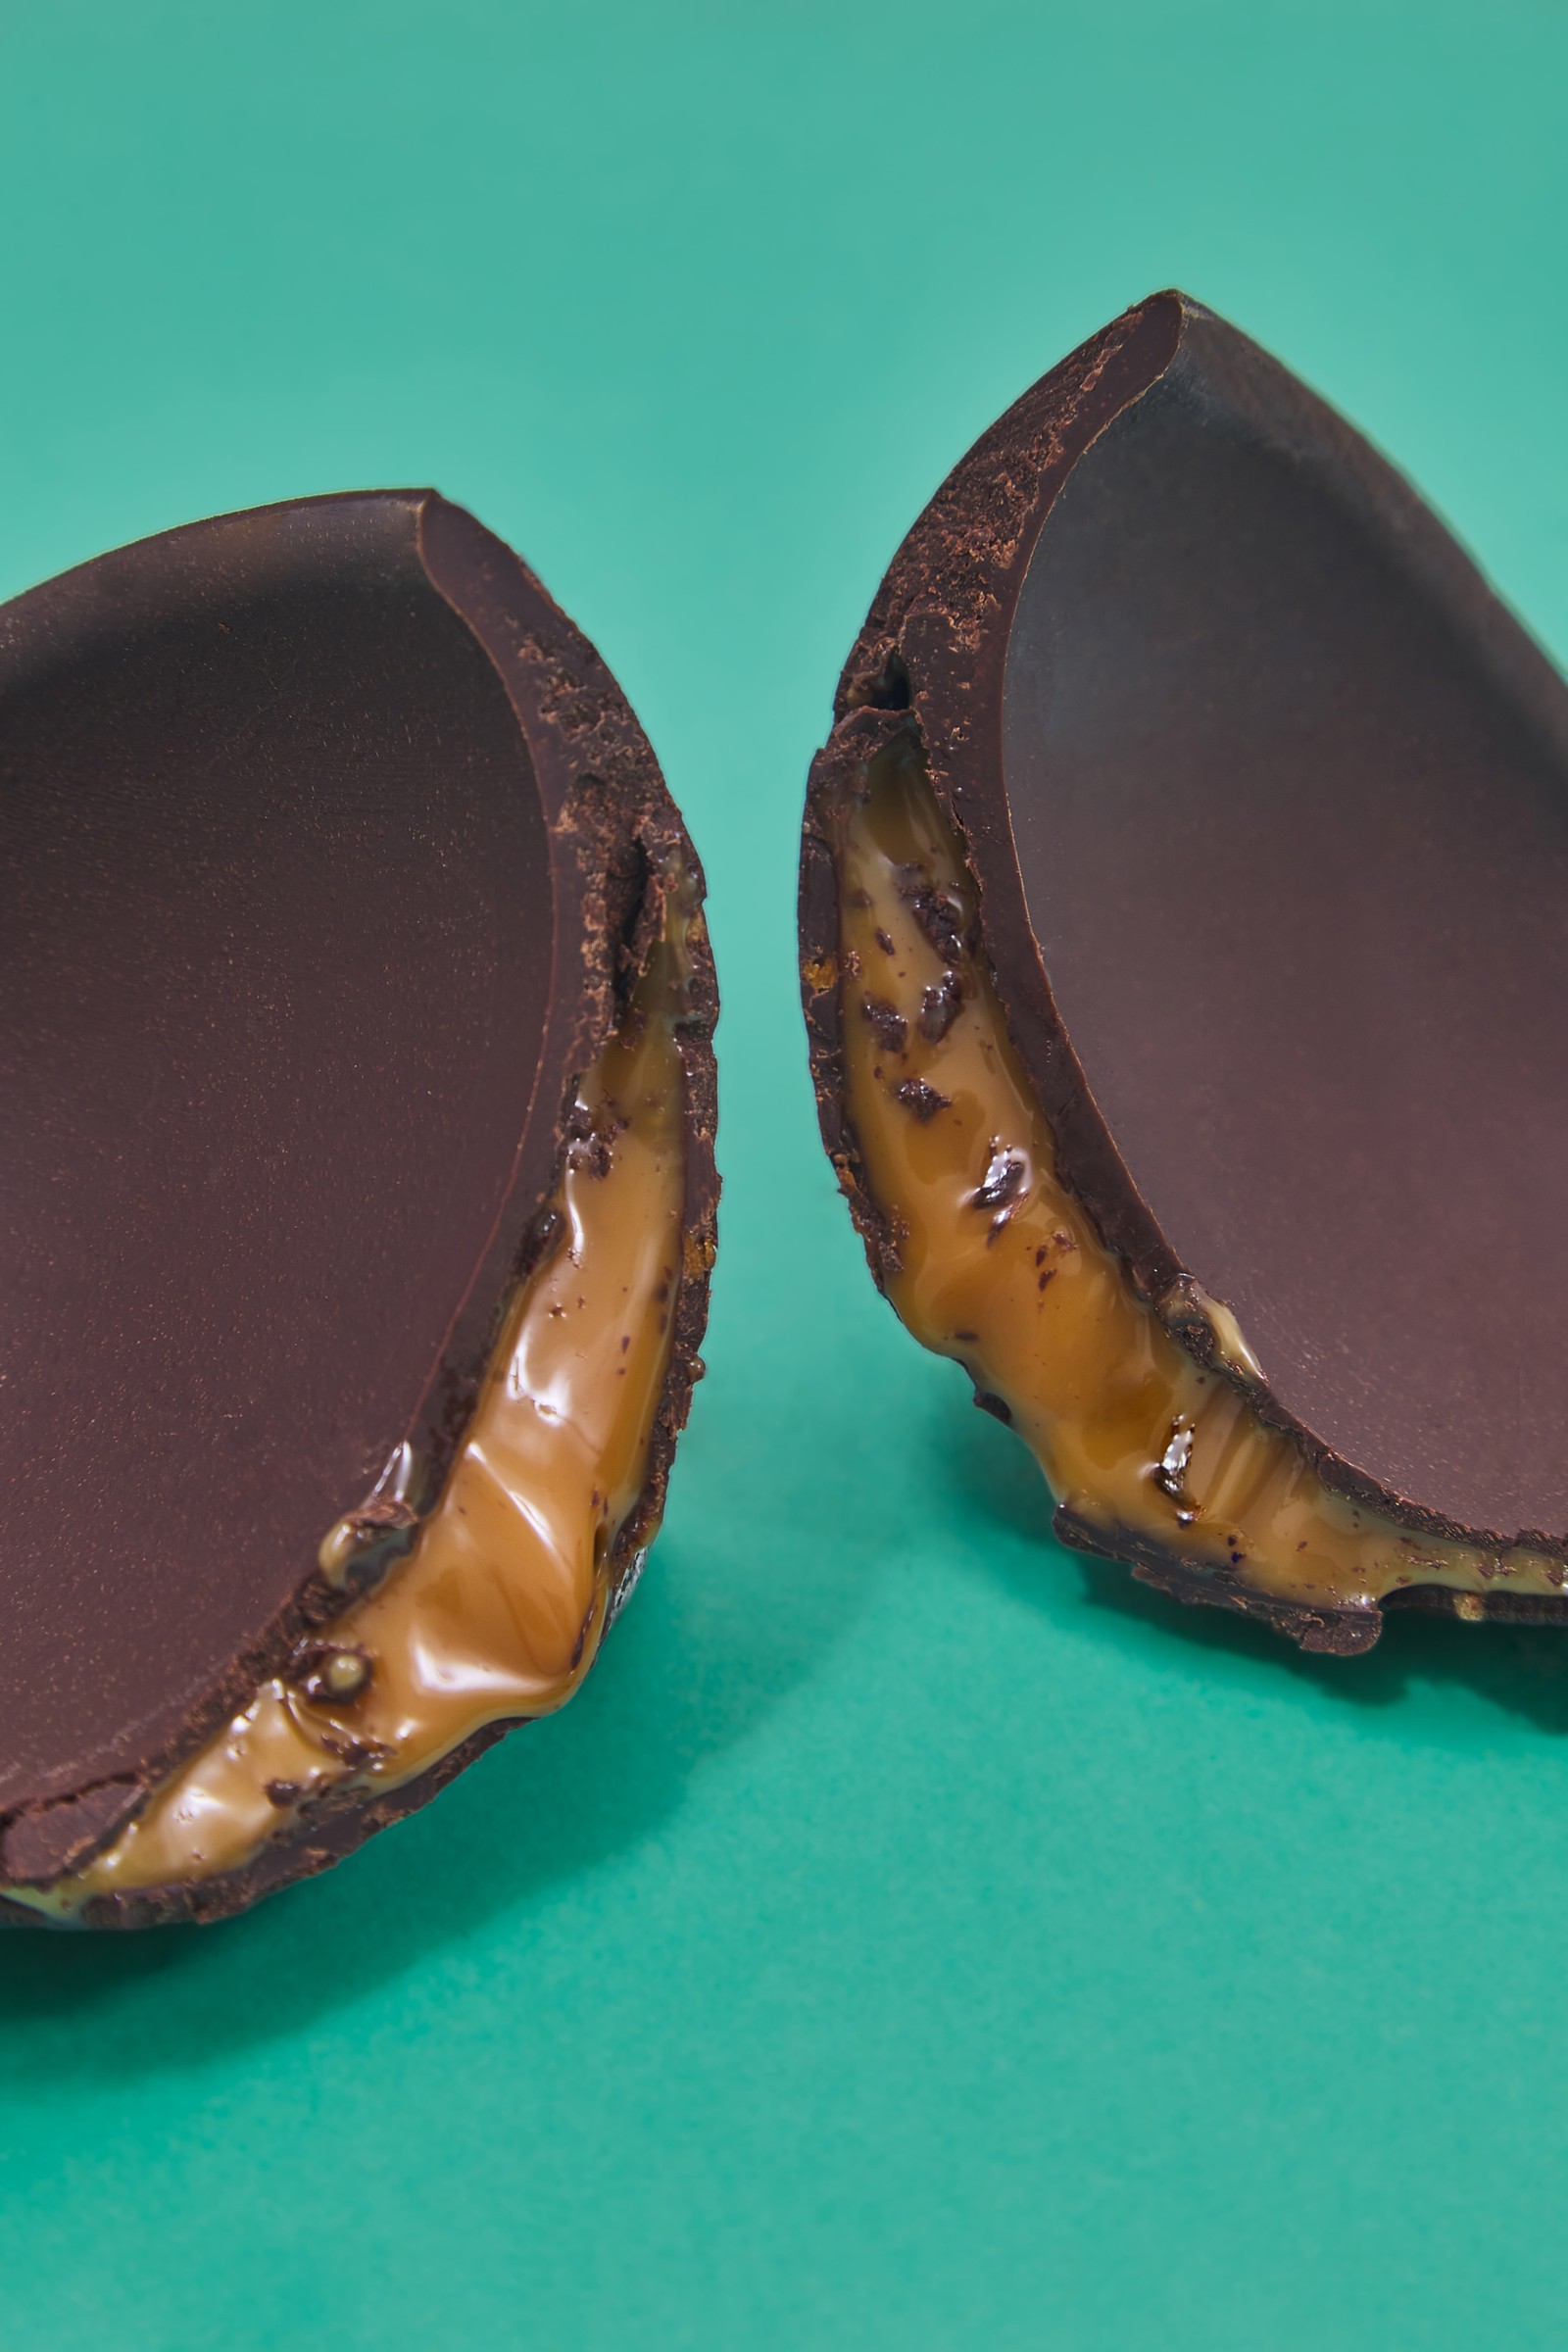 O Hortifruti Natural da Terra (hortifruti.com.br) aposta na linha própria, que inclui o ovo de chocolate meio amargo com recheio de caramelo (400g, R$ 59,90) — Foto: Divulgação